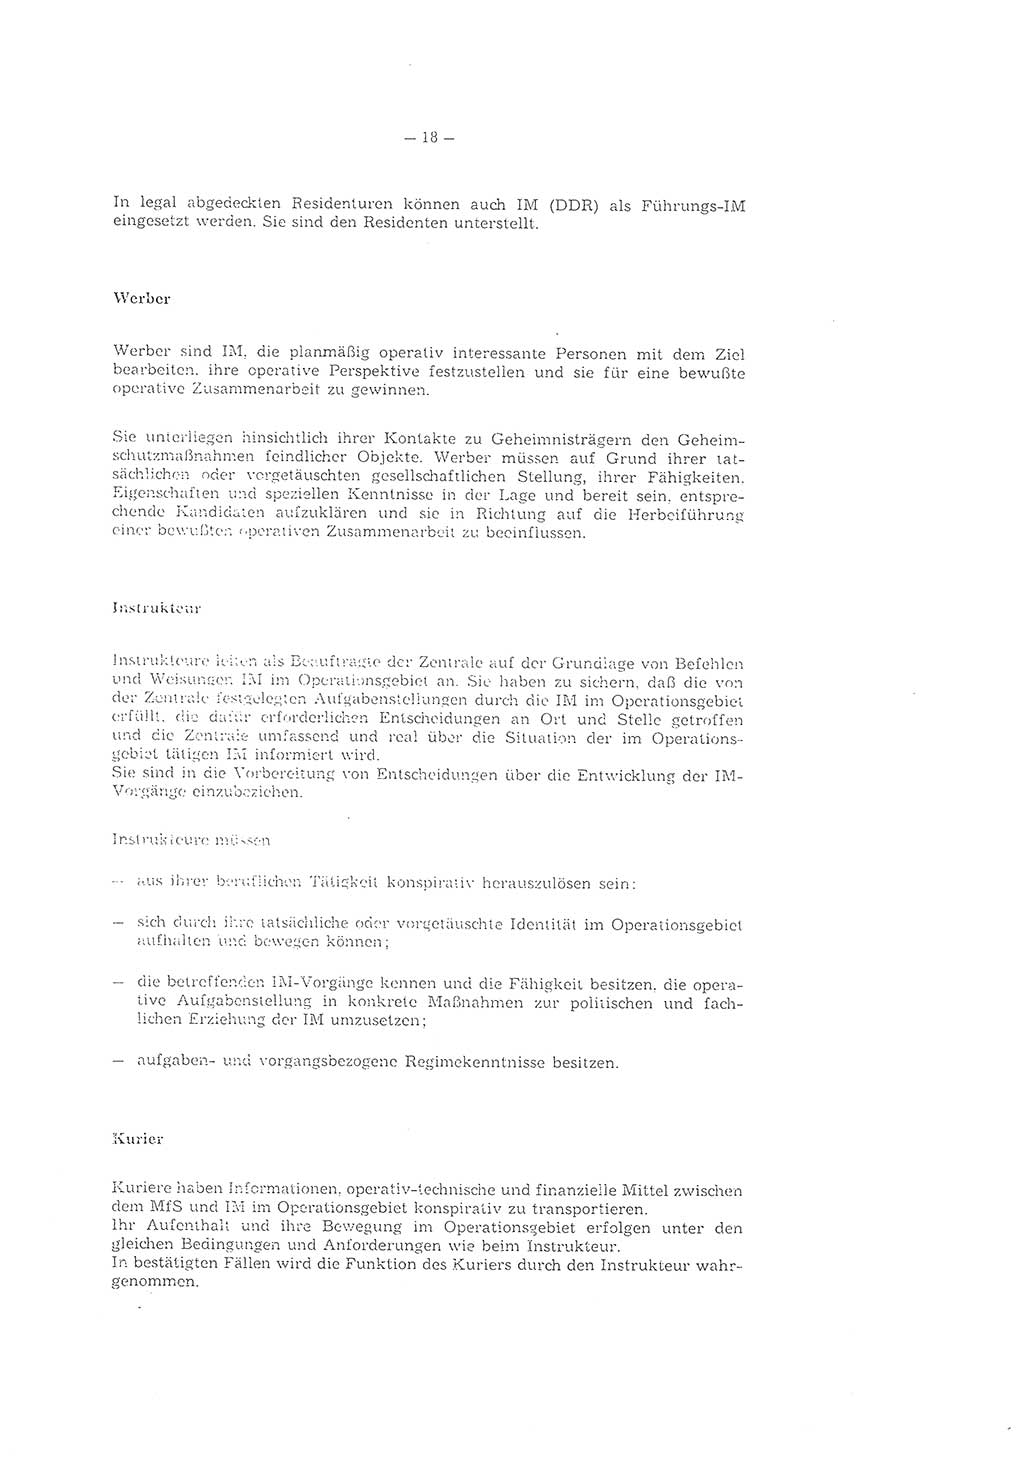 Richtlinie 2/79 für die Arbeit mit Inoffiziellen Mitarbeitern (IM) im Operationsgebiet, Deutsche Demokratische Republik (DDR), Ministerium für Staatssicherheit (MfS), Der Minister (Mielke), Geheime Verschlußsache (GVS) ooo8-2/79, Berlin 1979, Seite 18 (RL 2/79 DDR MfS Min. GVS ooo8-2/79 1979, S. 18)